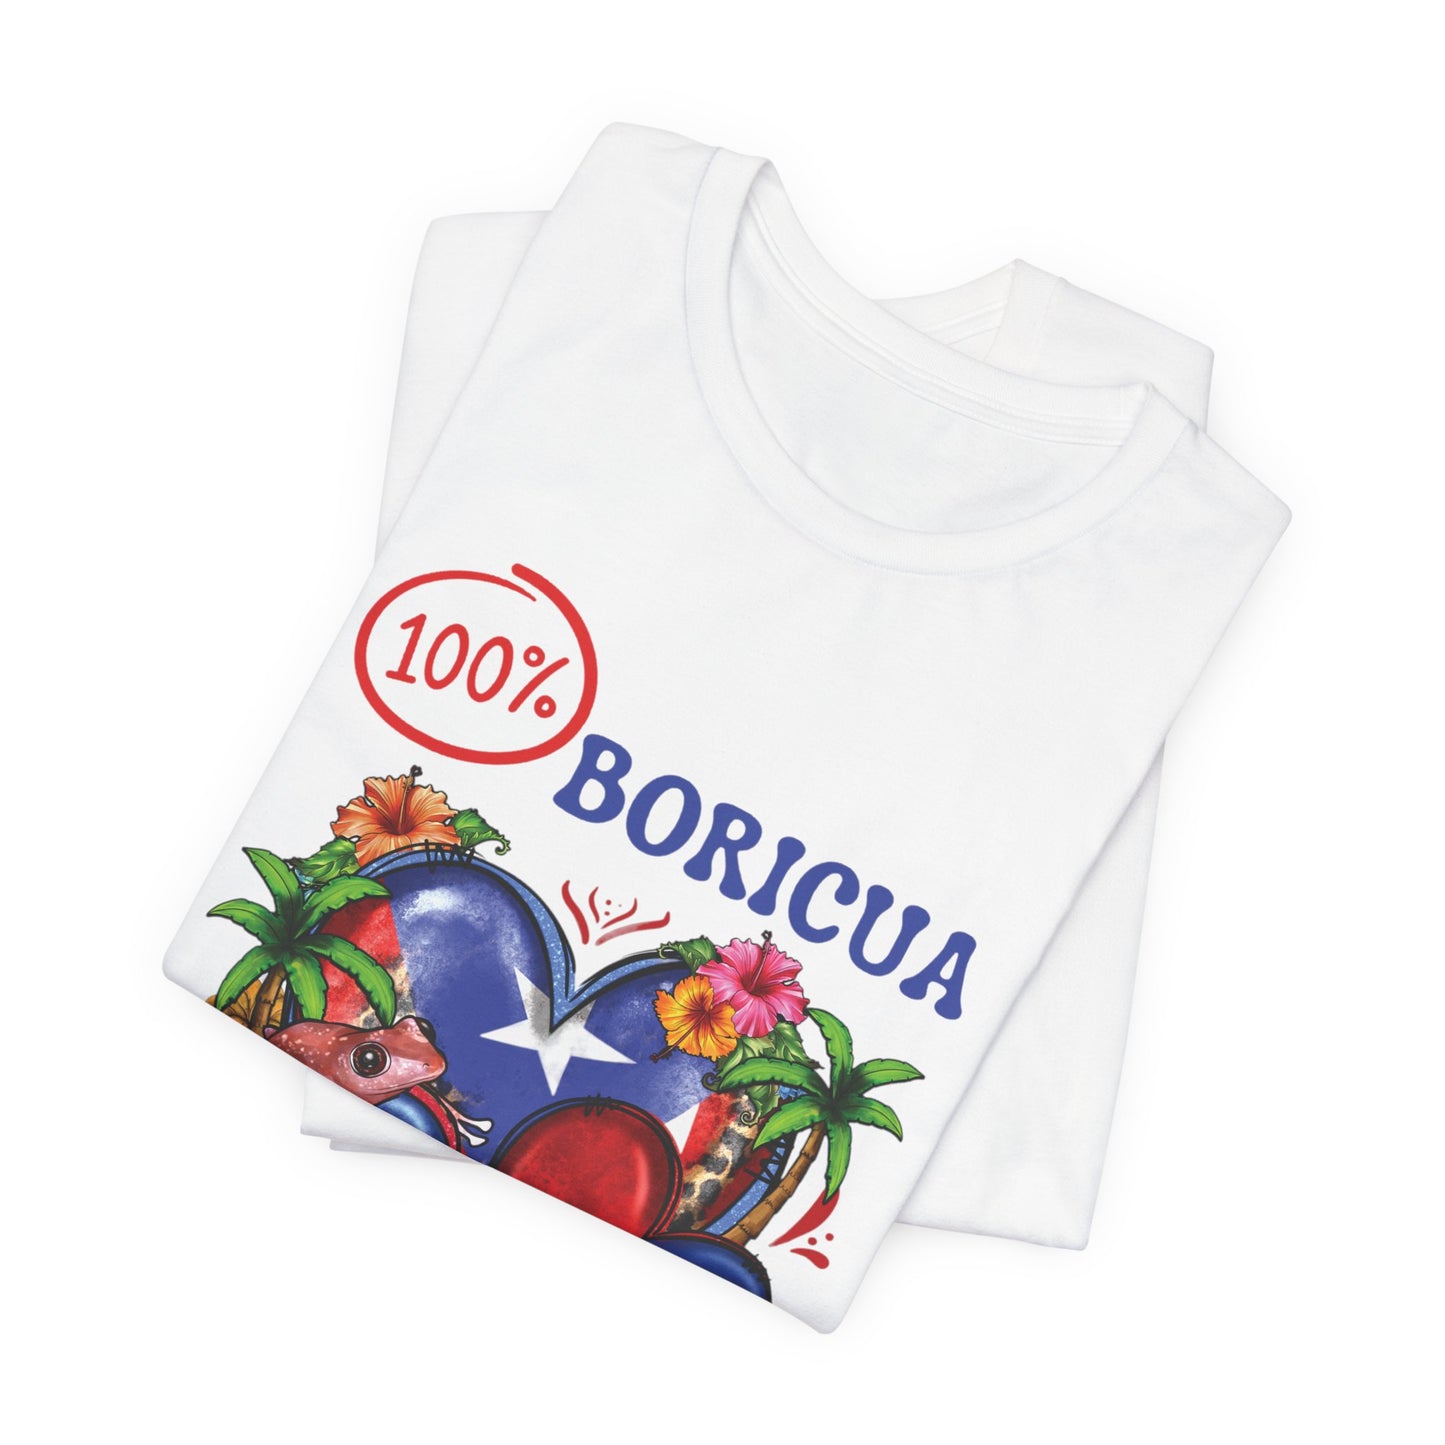 100% BORICUA Unisex Puerto Rico Elements Boricua Shirt 4everBoricua™️ - White